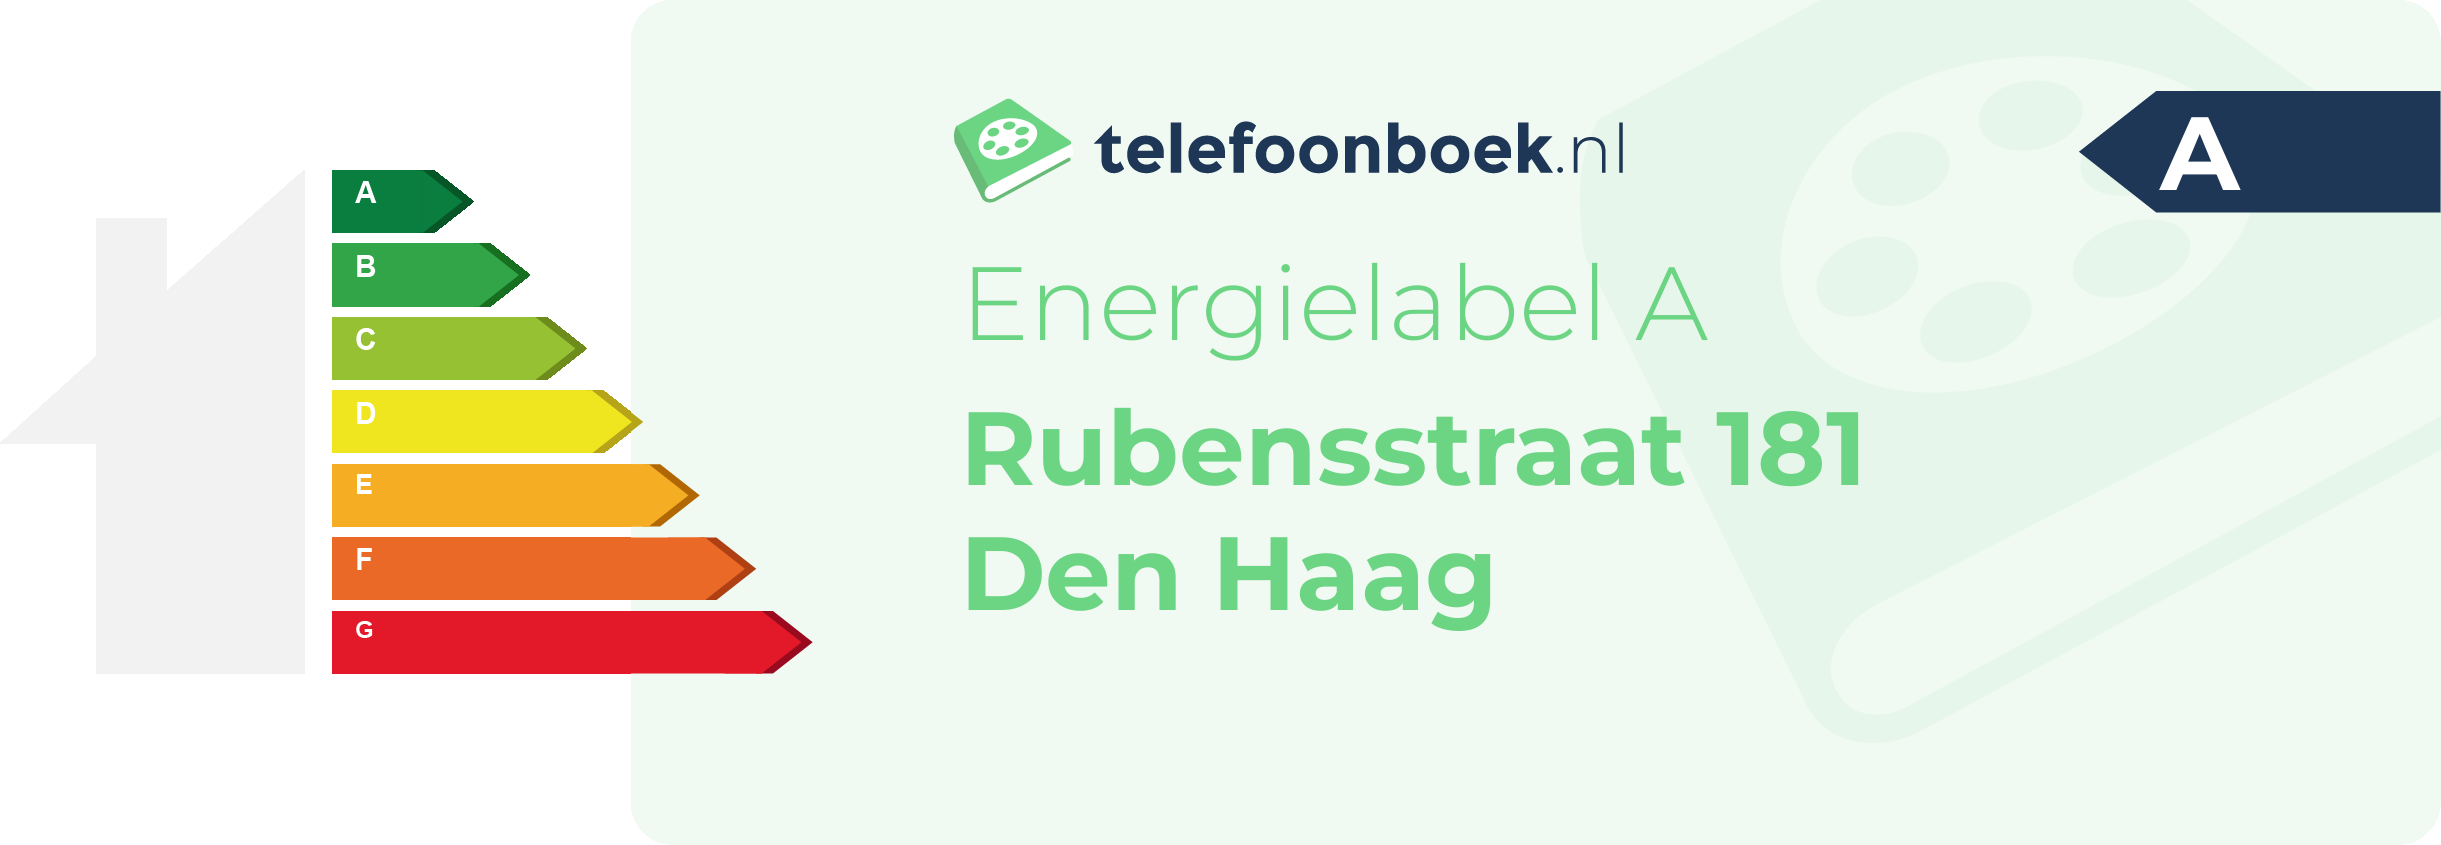 Energielabel Rubensstraat 181 Den Haag